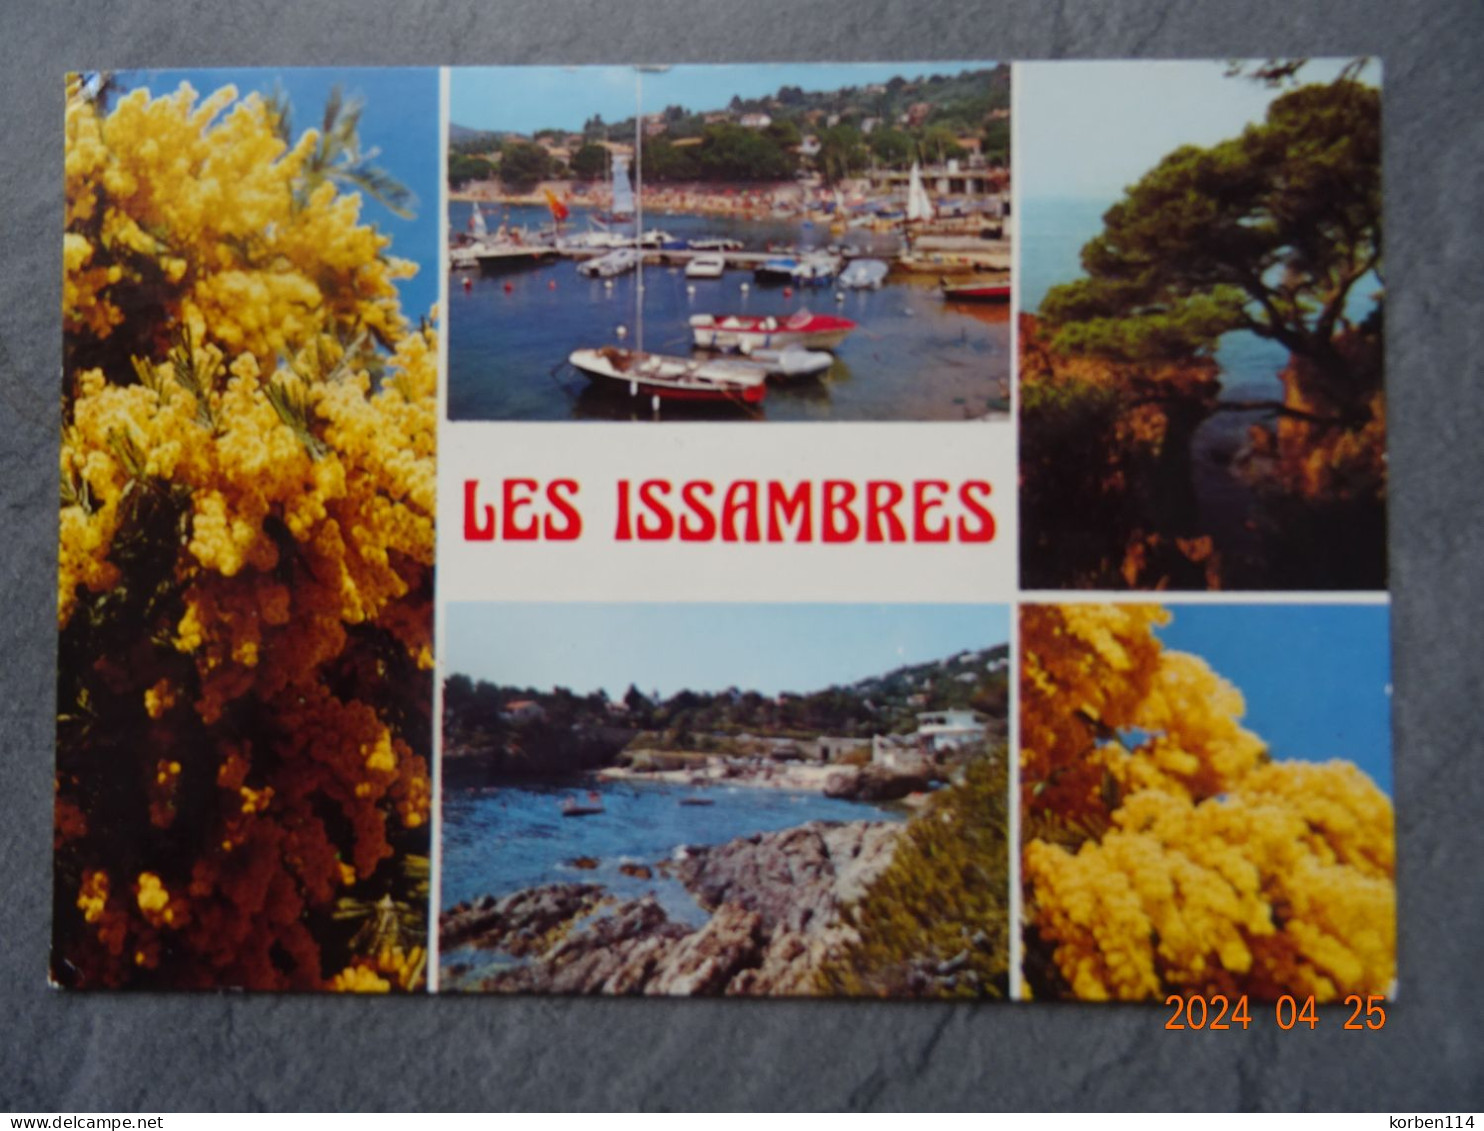 SAN PEIRE LES ISSAMBRES - Les Issambres